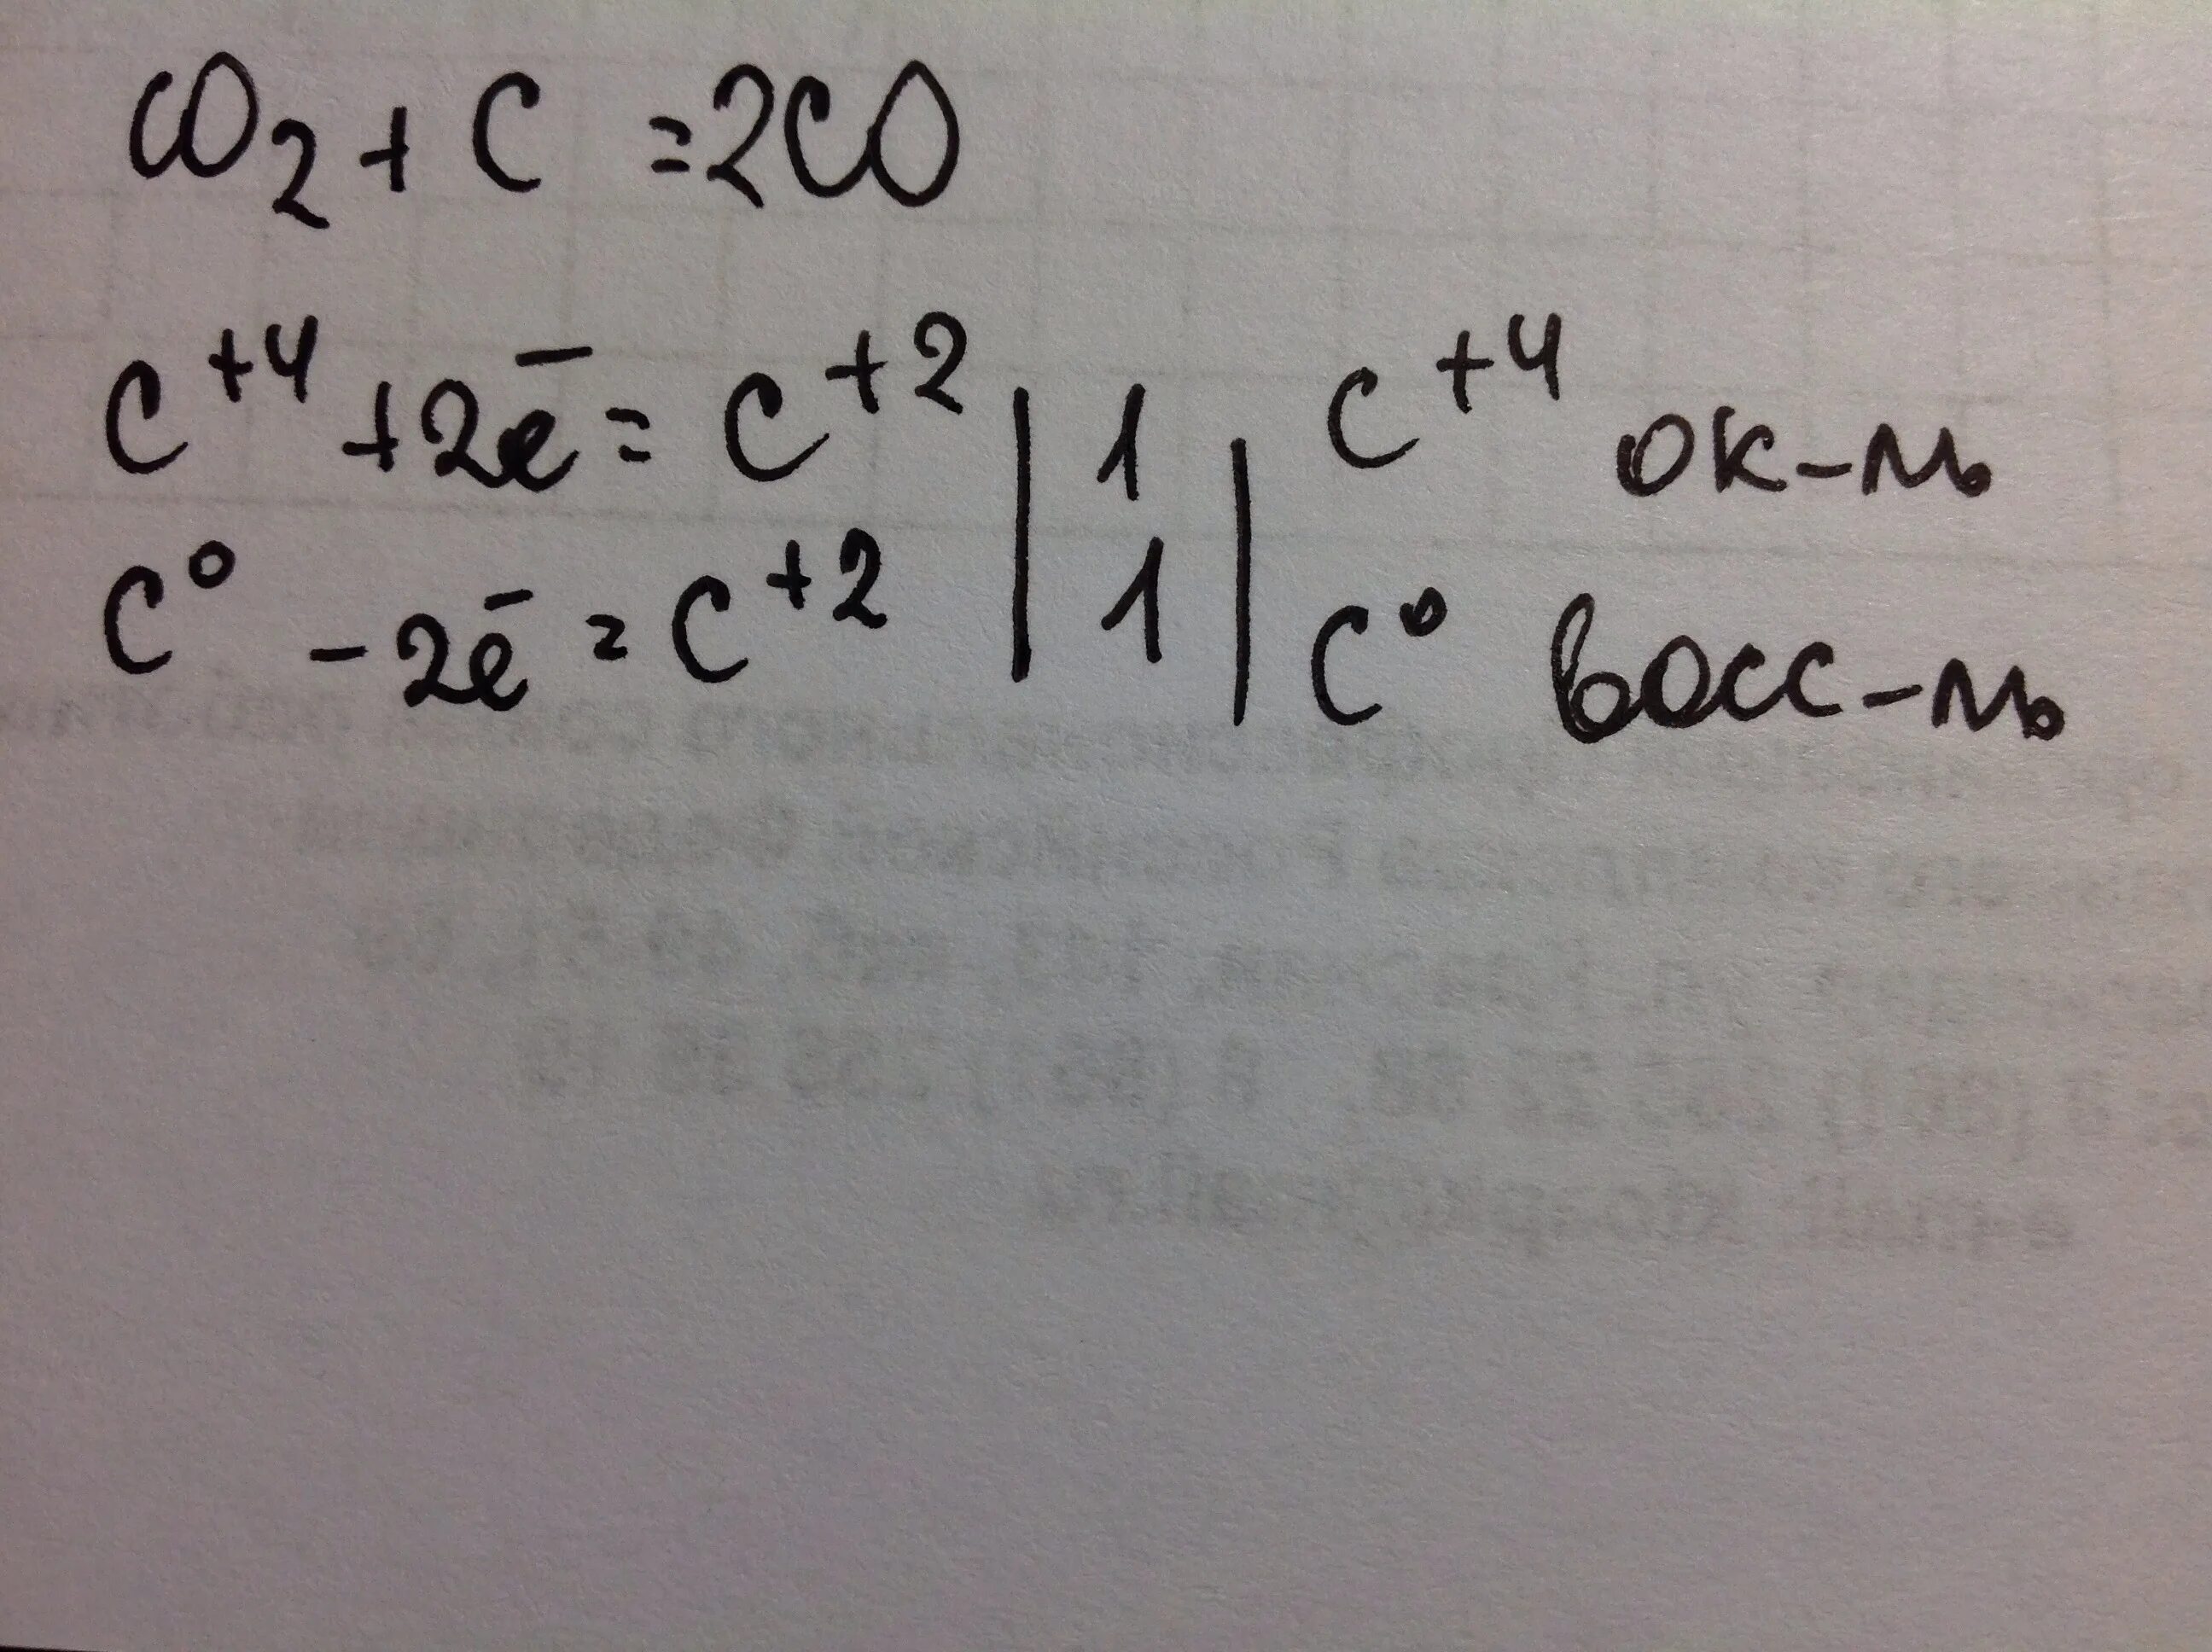 C co овр. C o2 co2 окислительно восстановительная реакция. Co2 c 2co окислительно восстановительная реакция. Co2+c окислительно-восстановительная реакция. Co2 c co окислительно восстановительная реакция.